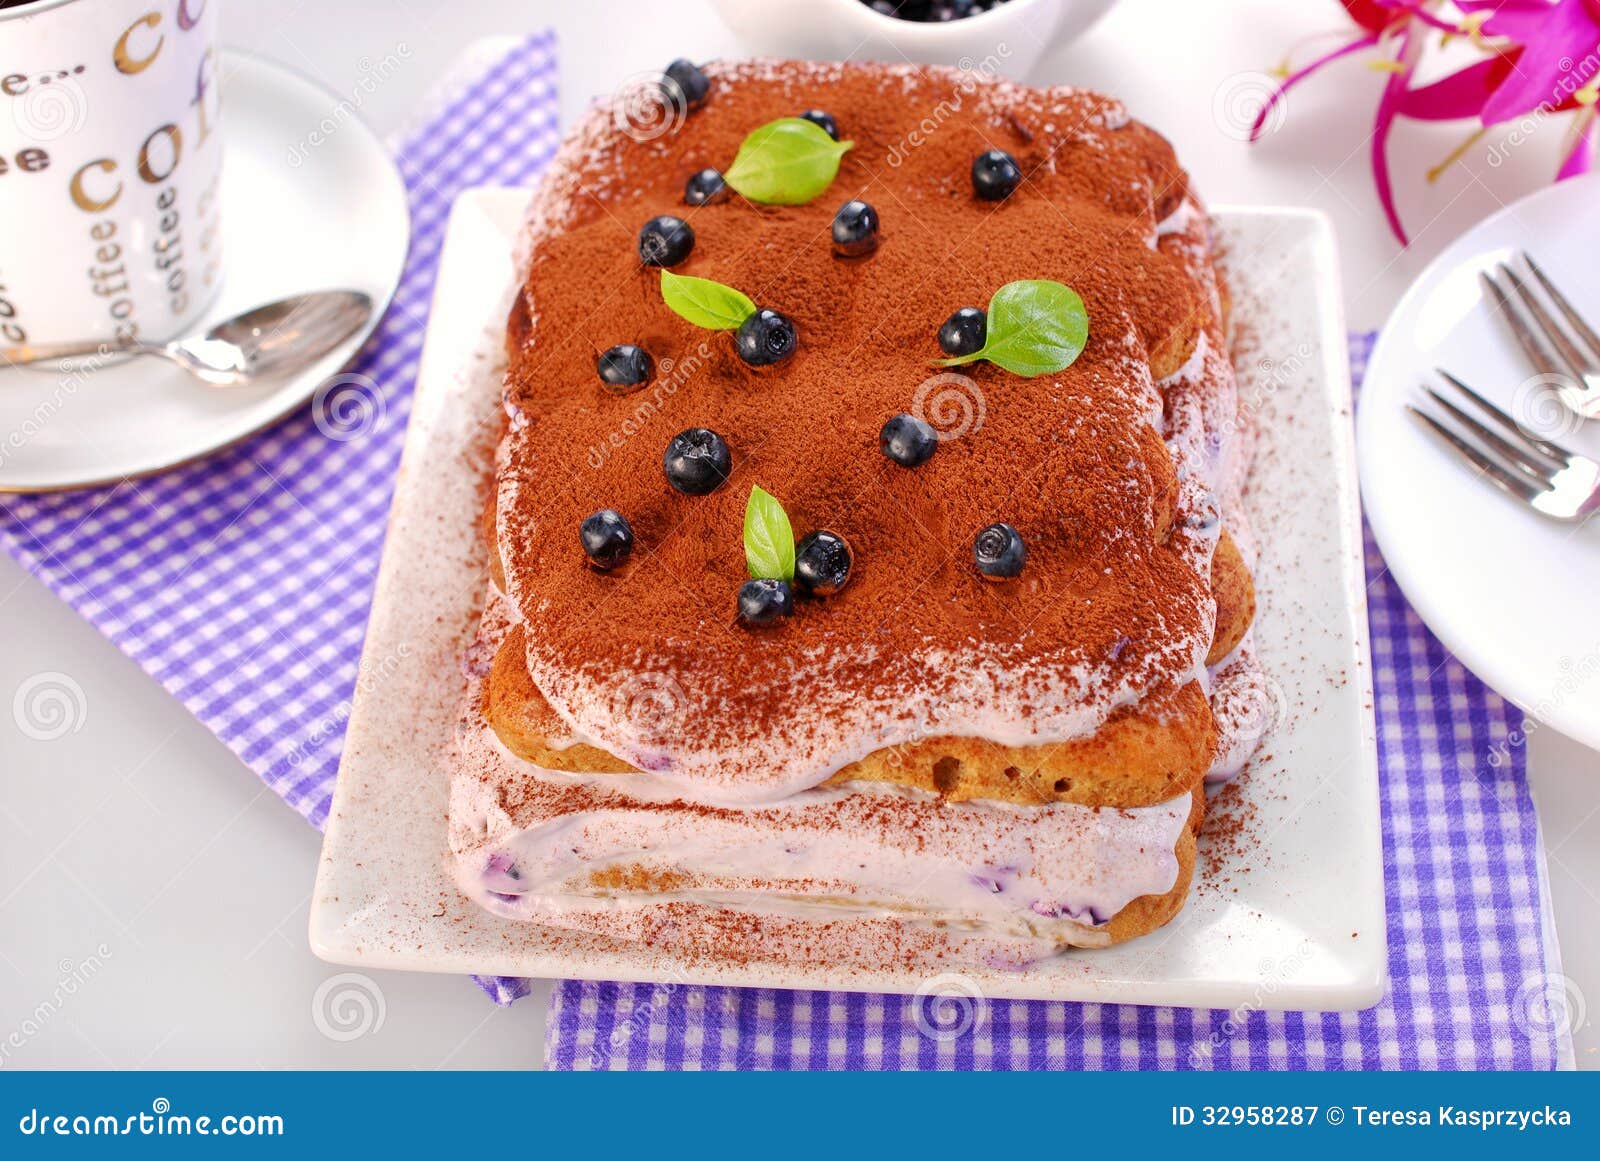 蓝莓提拉米苏蛋糕 免版税图库摄影 - 图片: 32958297